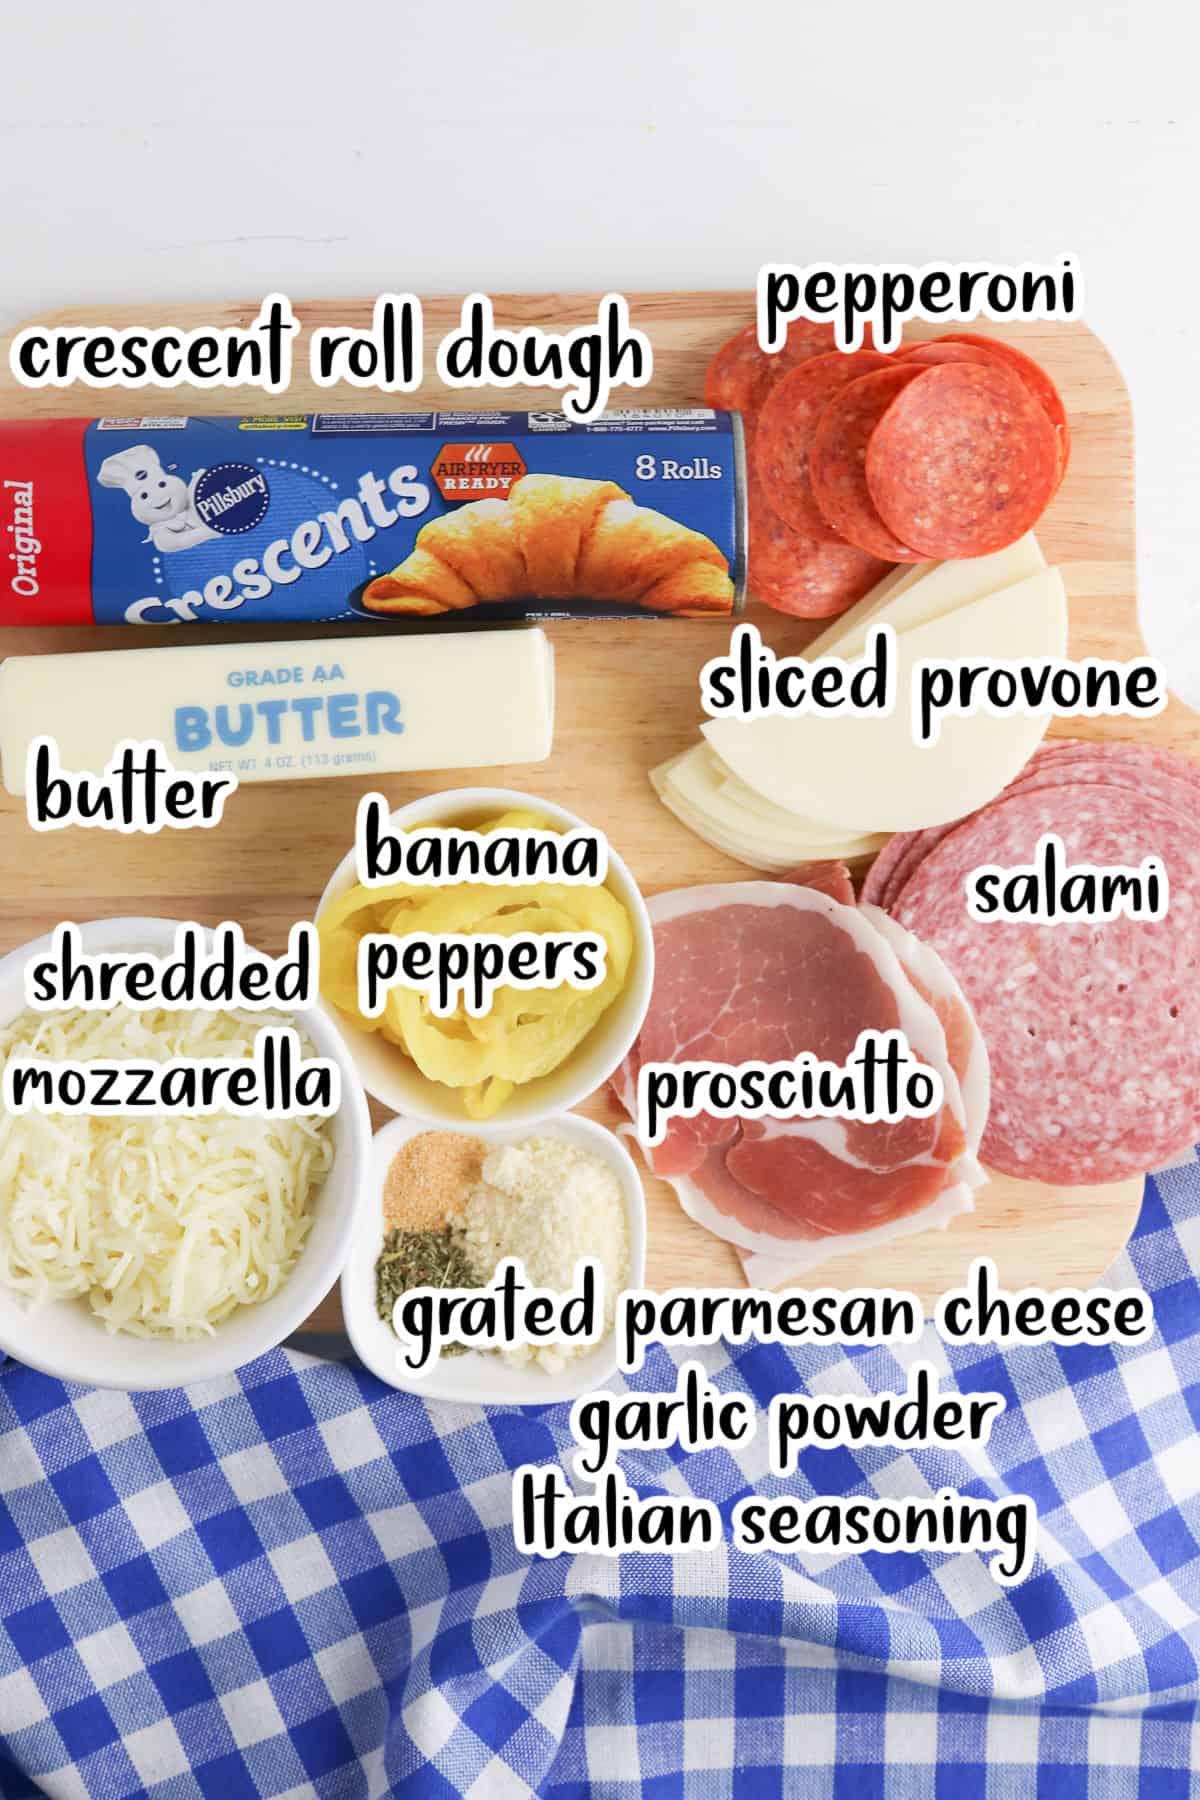 Stromboli recipe ingredients.